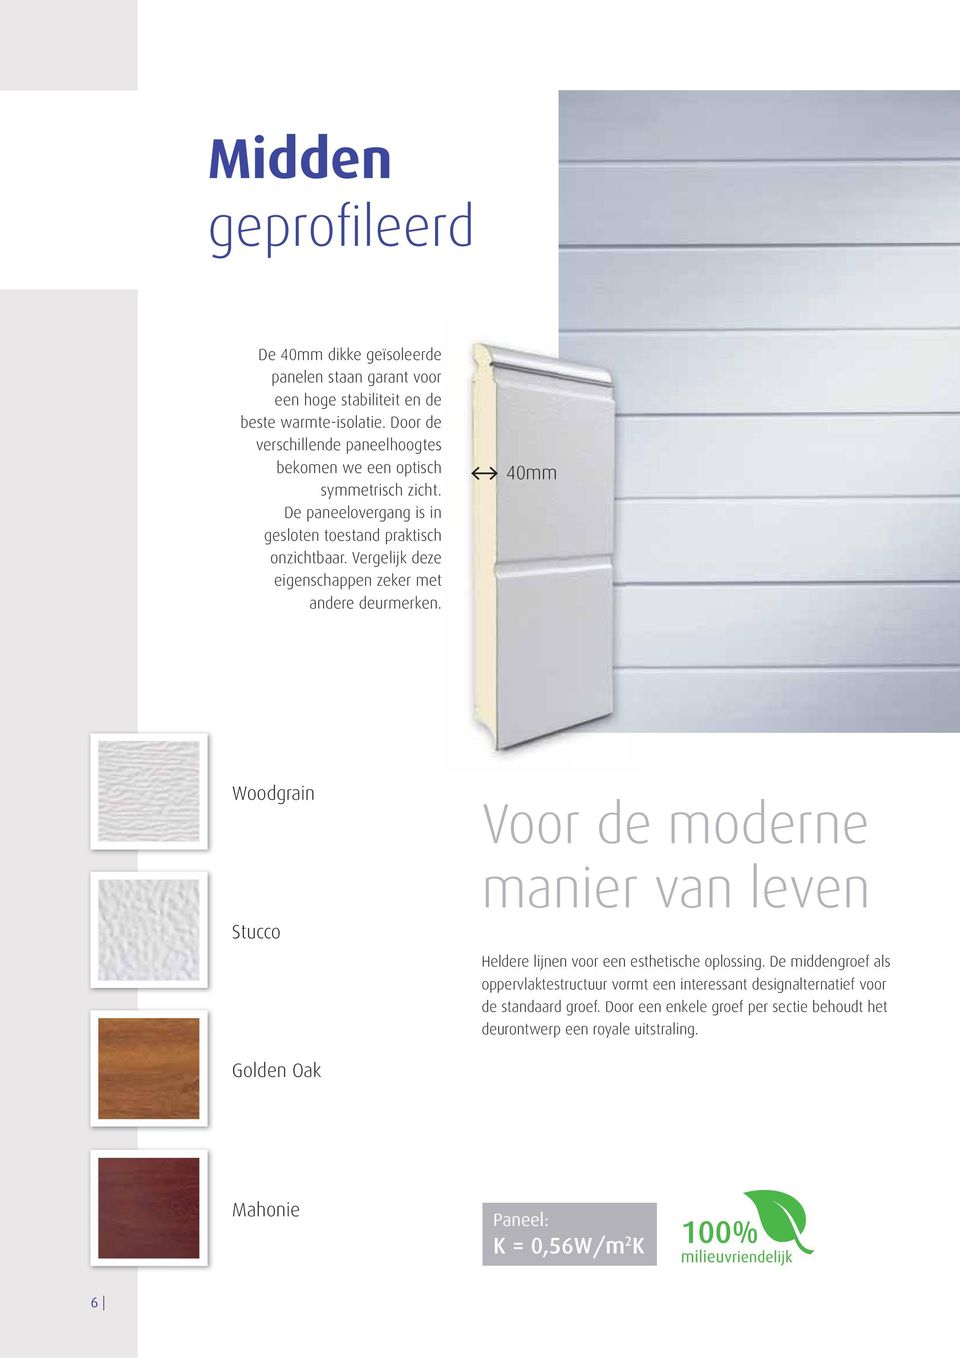 Vergelijk deze eigenschappen zeker met andere deurmerken. 40mm Woodgrain Stucco Voor de moderne manier van leven Heldere lijnen voor een esthetische oplossing.